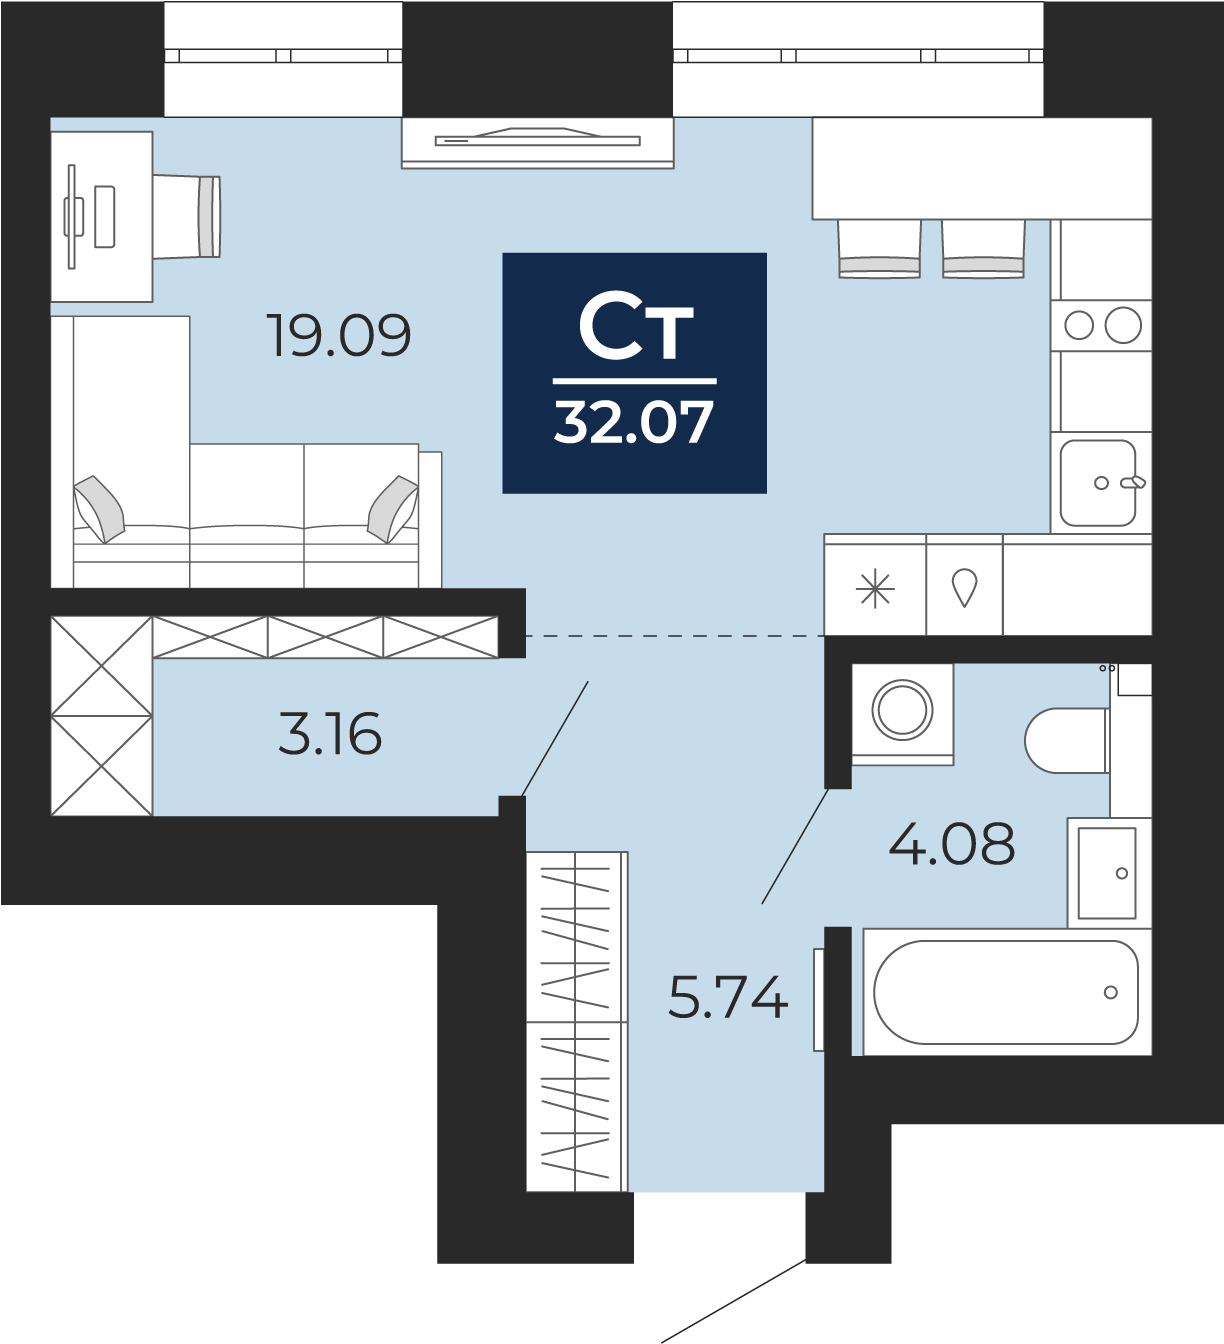 Квартира № 232, Студия, 32.07 кв. м, 7 этаж